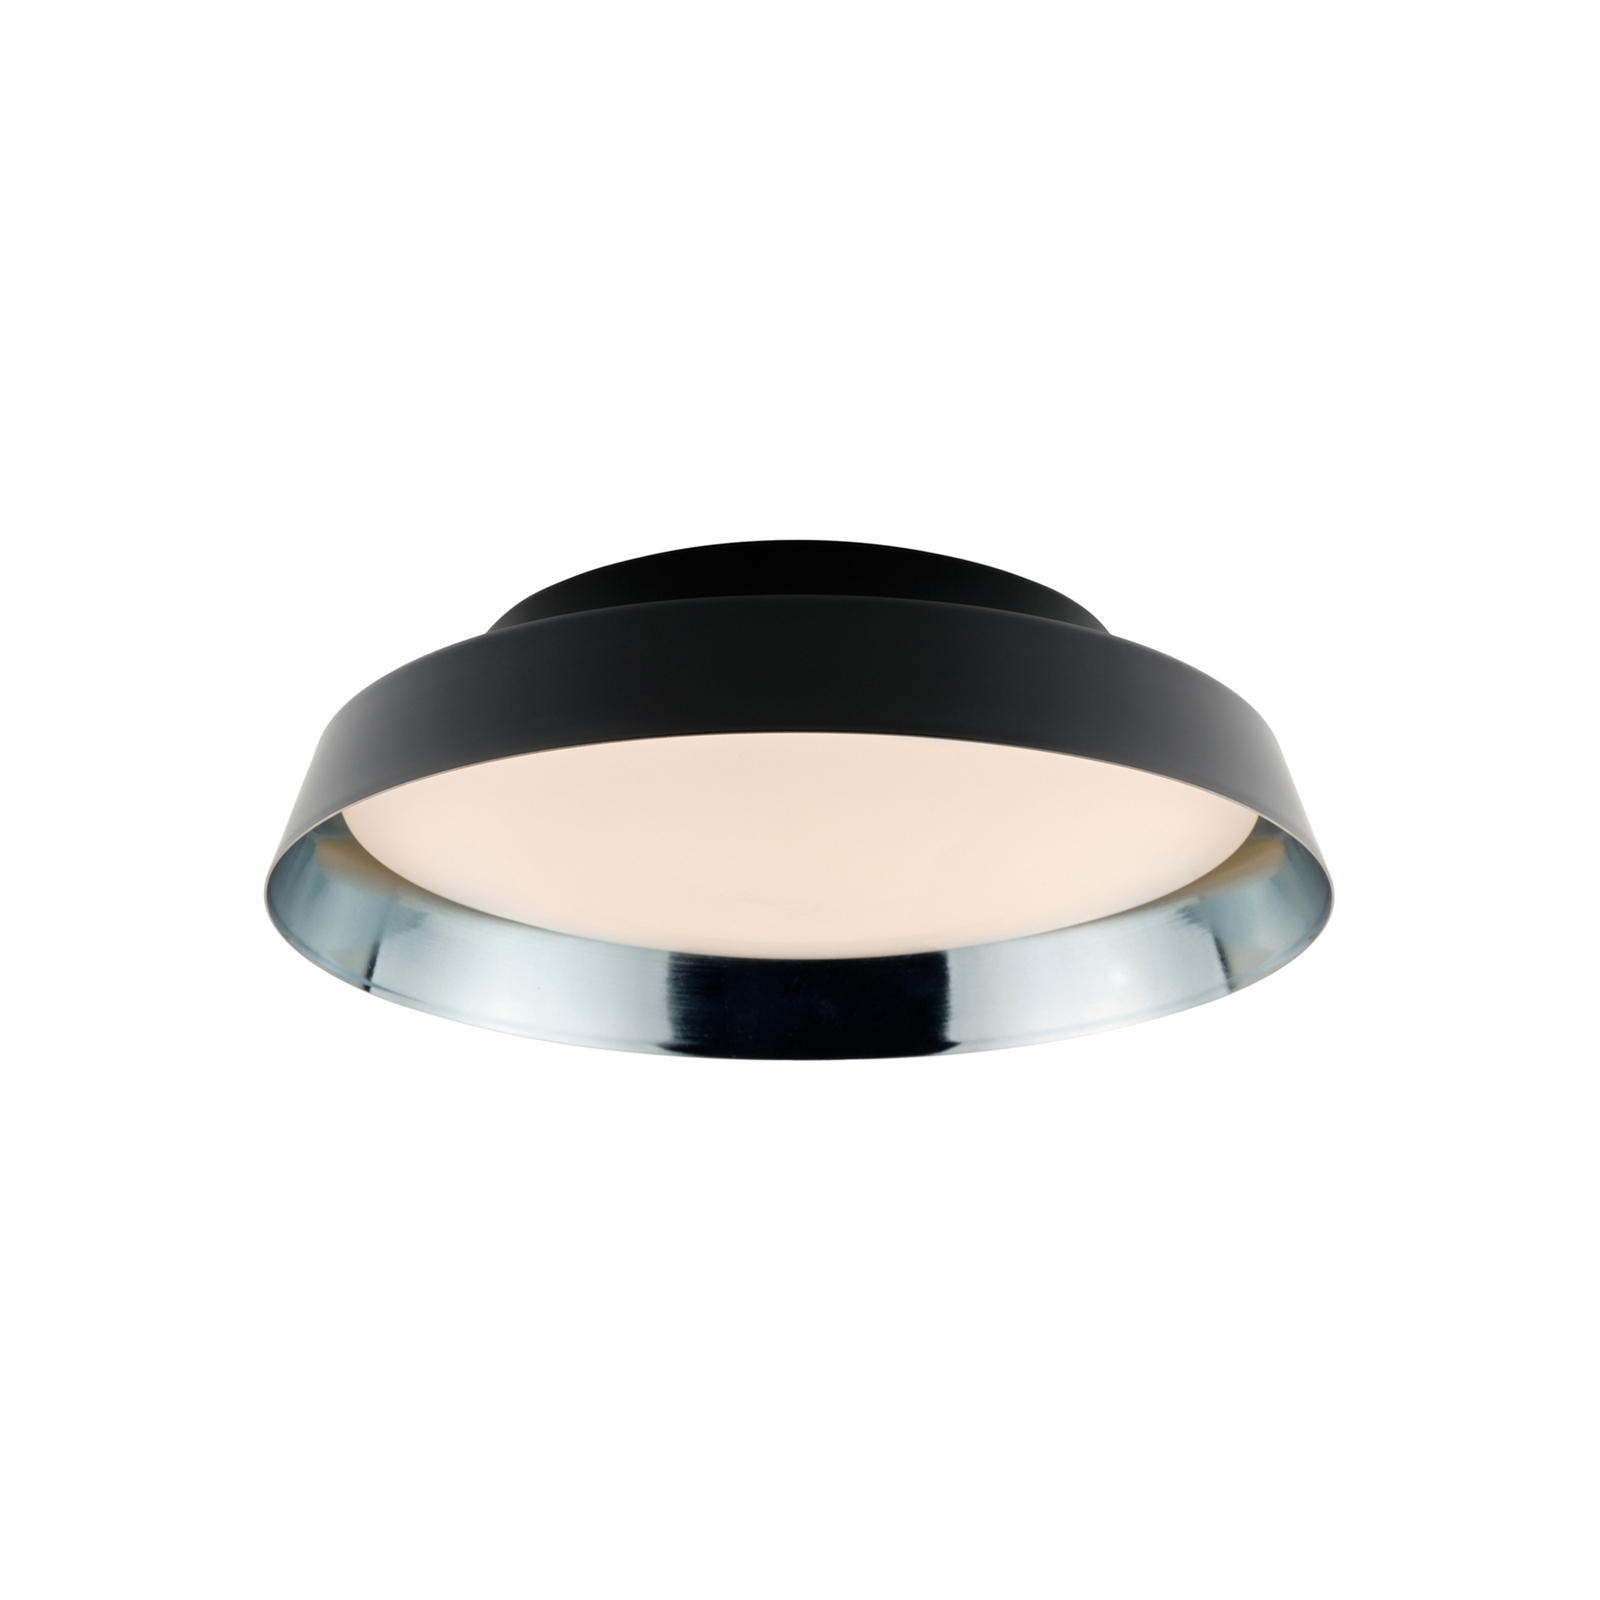 LED-Außendeckenlampe Boop! Ø37cm schwarz/blau-grau